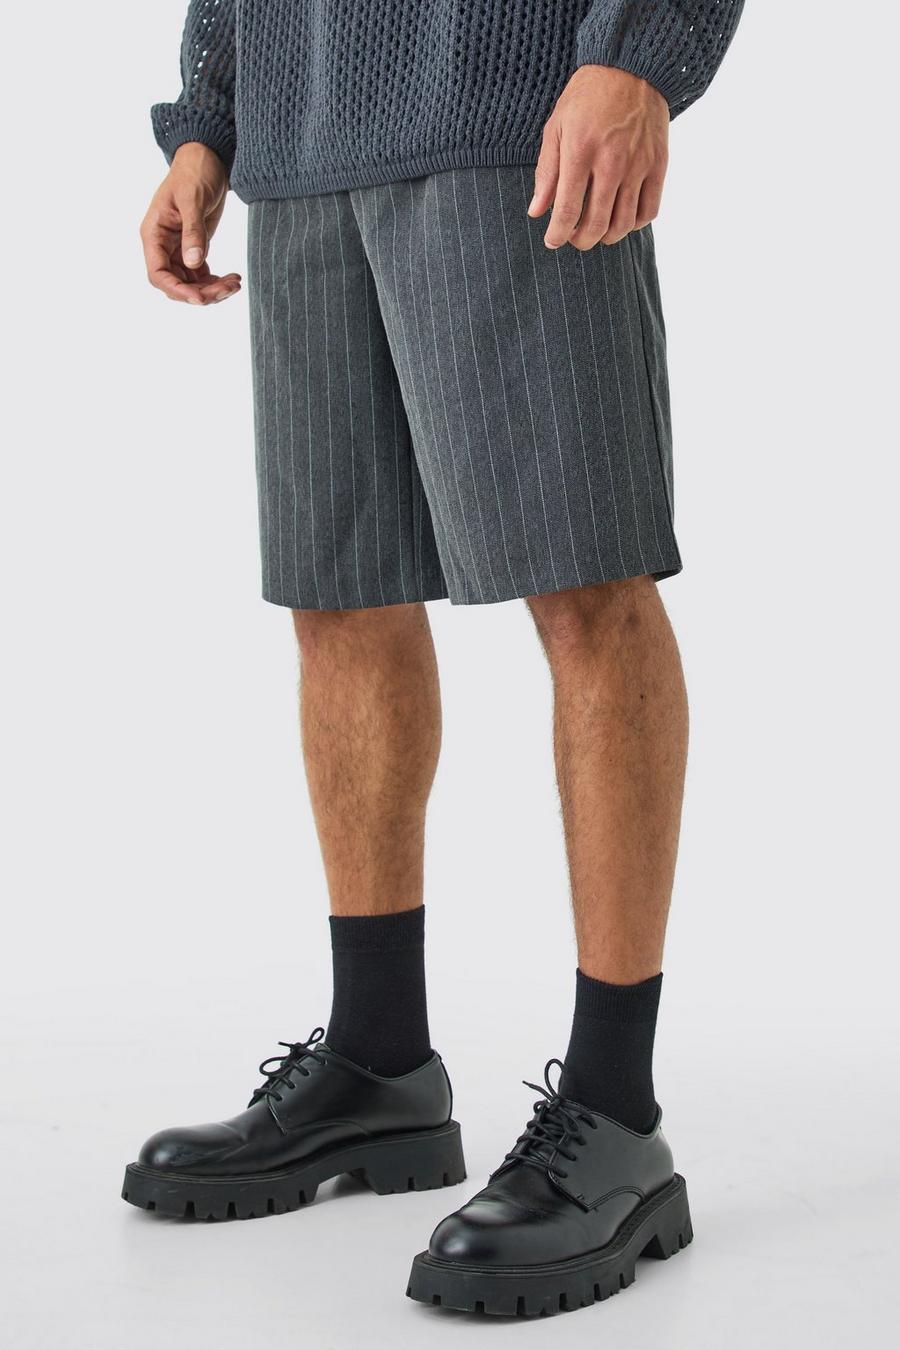 Pantalón deportivo plisado entallado de pernera ancha, Grey